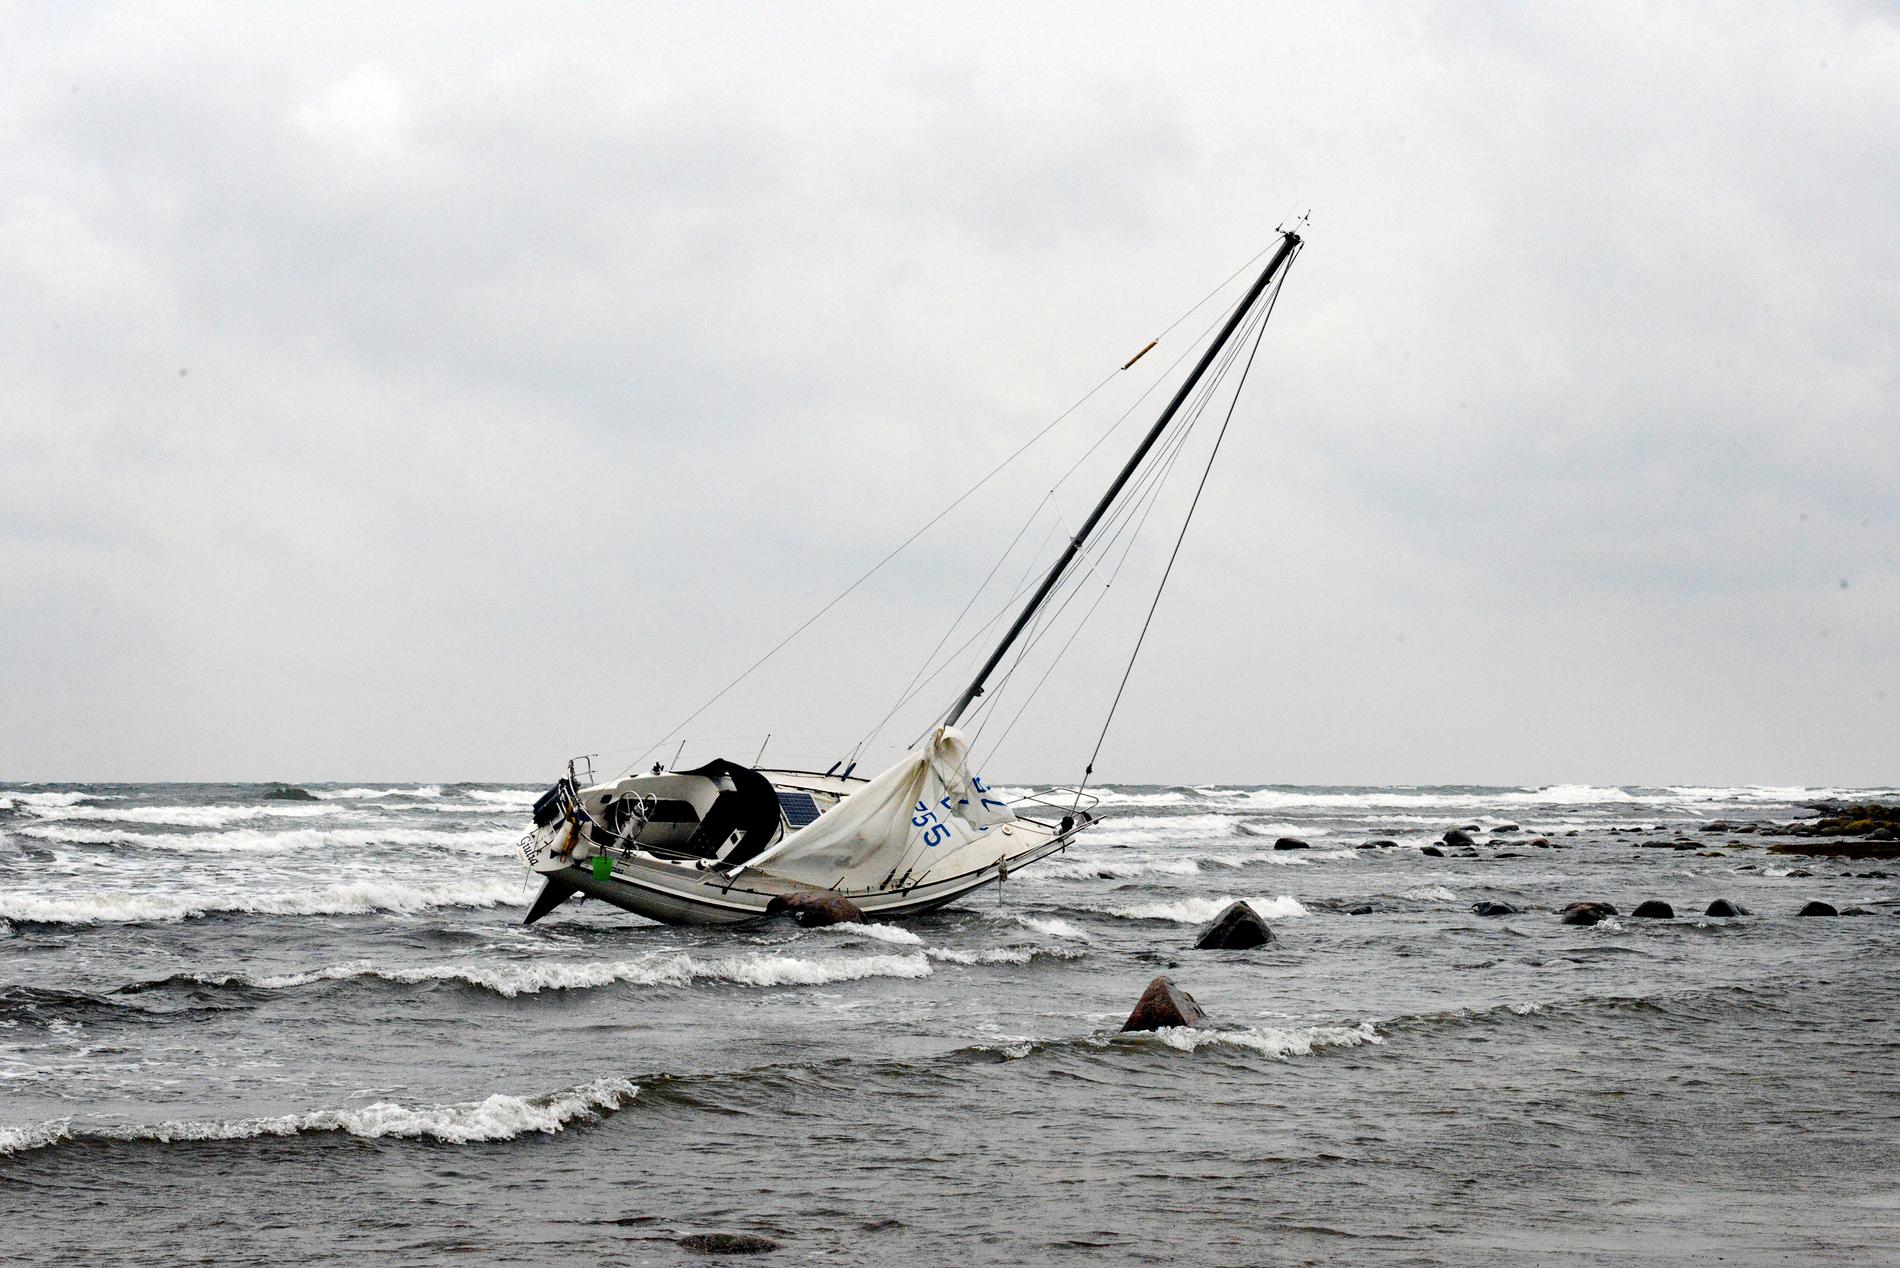 Mannens båt kapsejsade i den hårda vinden.